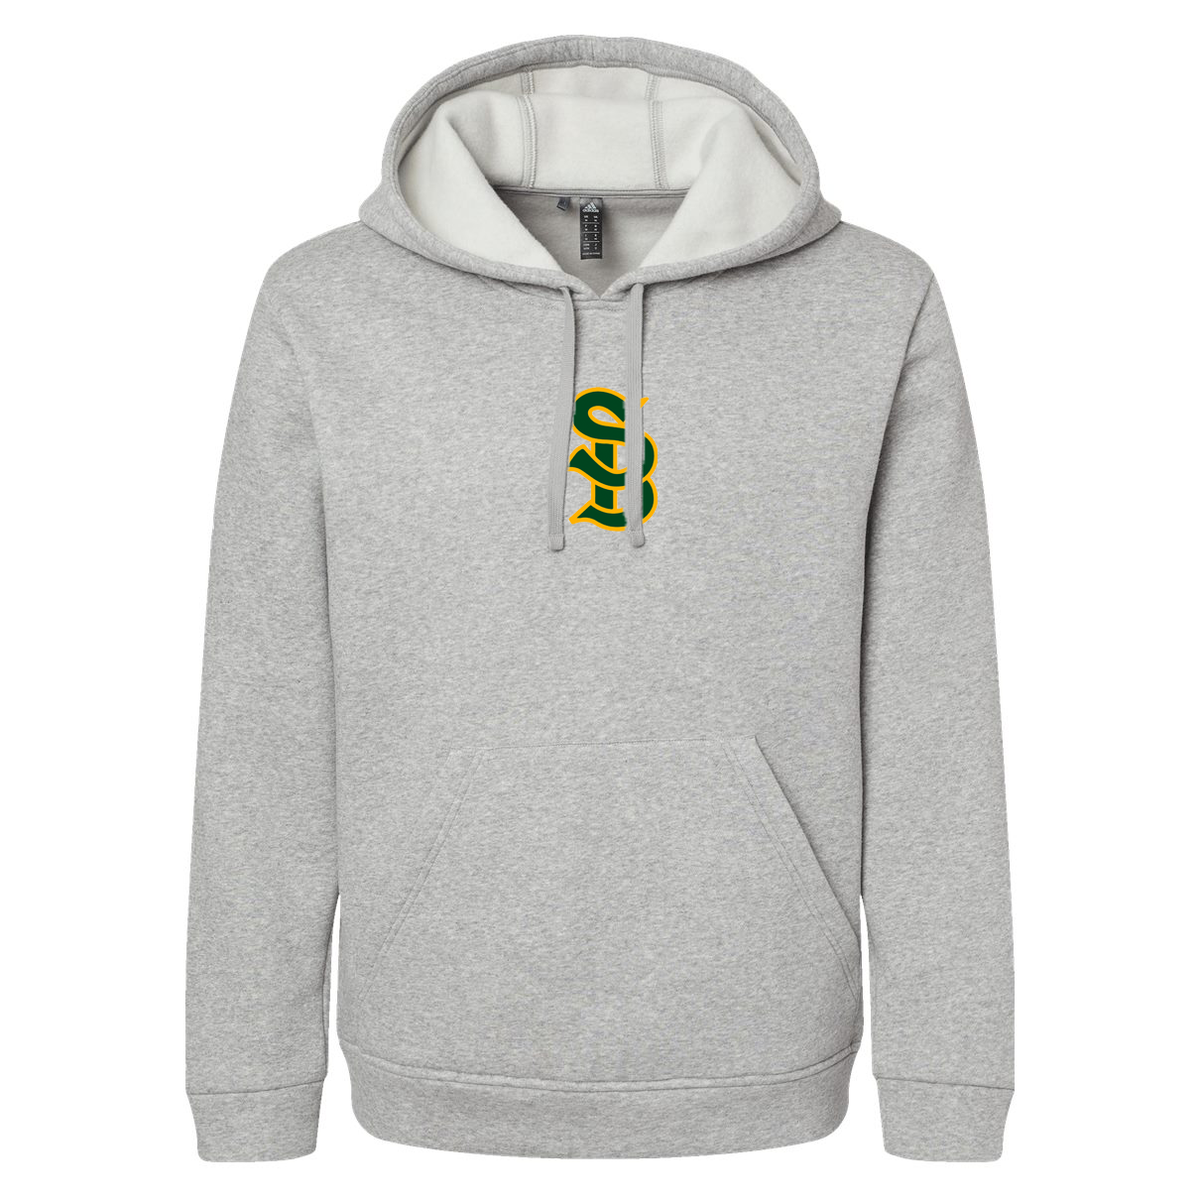 Santa Barbara HS Baseball Adidas Fleece Hooded Sweatshirt